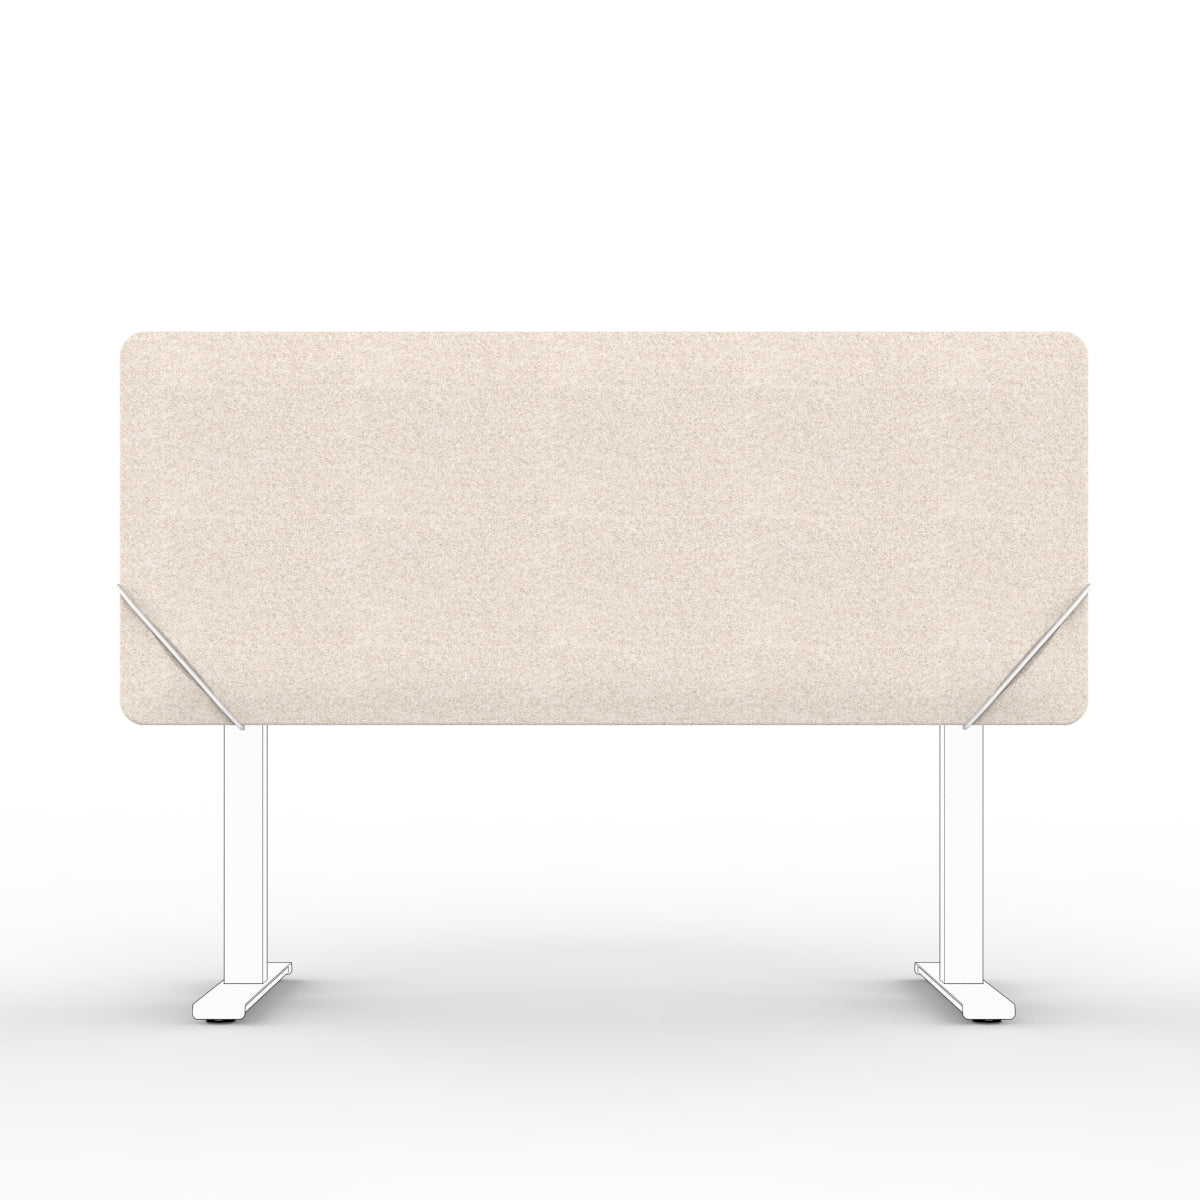 Sound absorbing table divider in natural beige with white slide on table mounts. Bordskjerm for skrivebord. Avskjerming og lyddemping på kontor